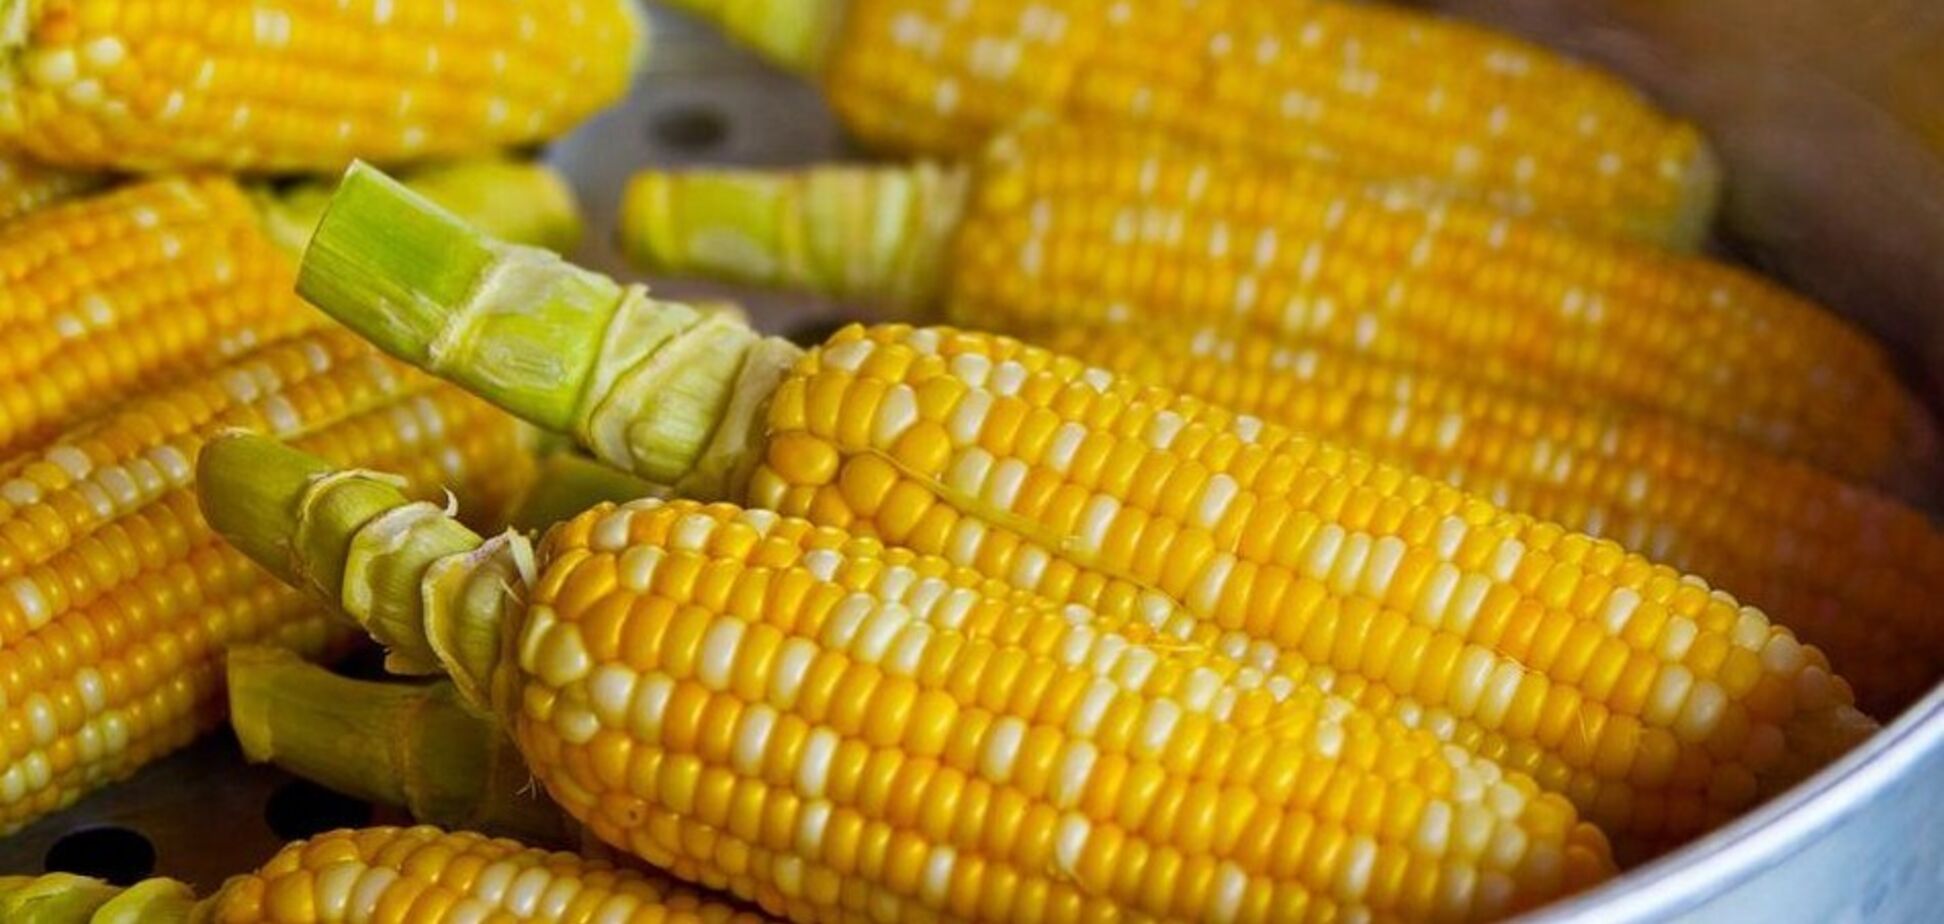 Як правильно готувати та зберігати кукурудзу, щоб зберегти корисні властивості